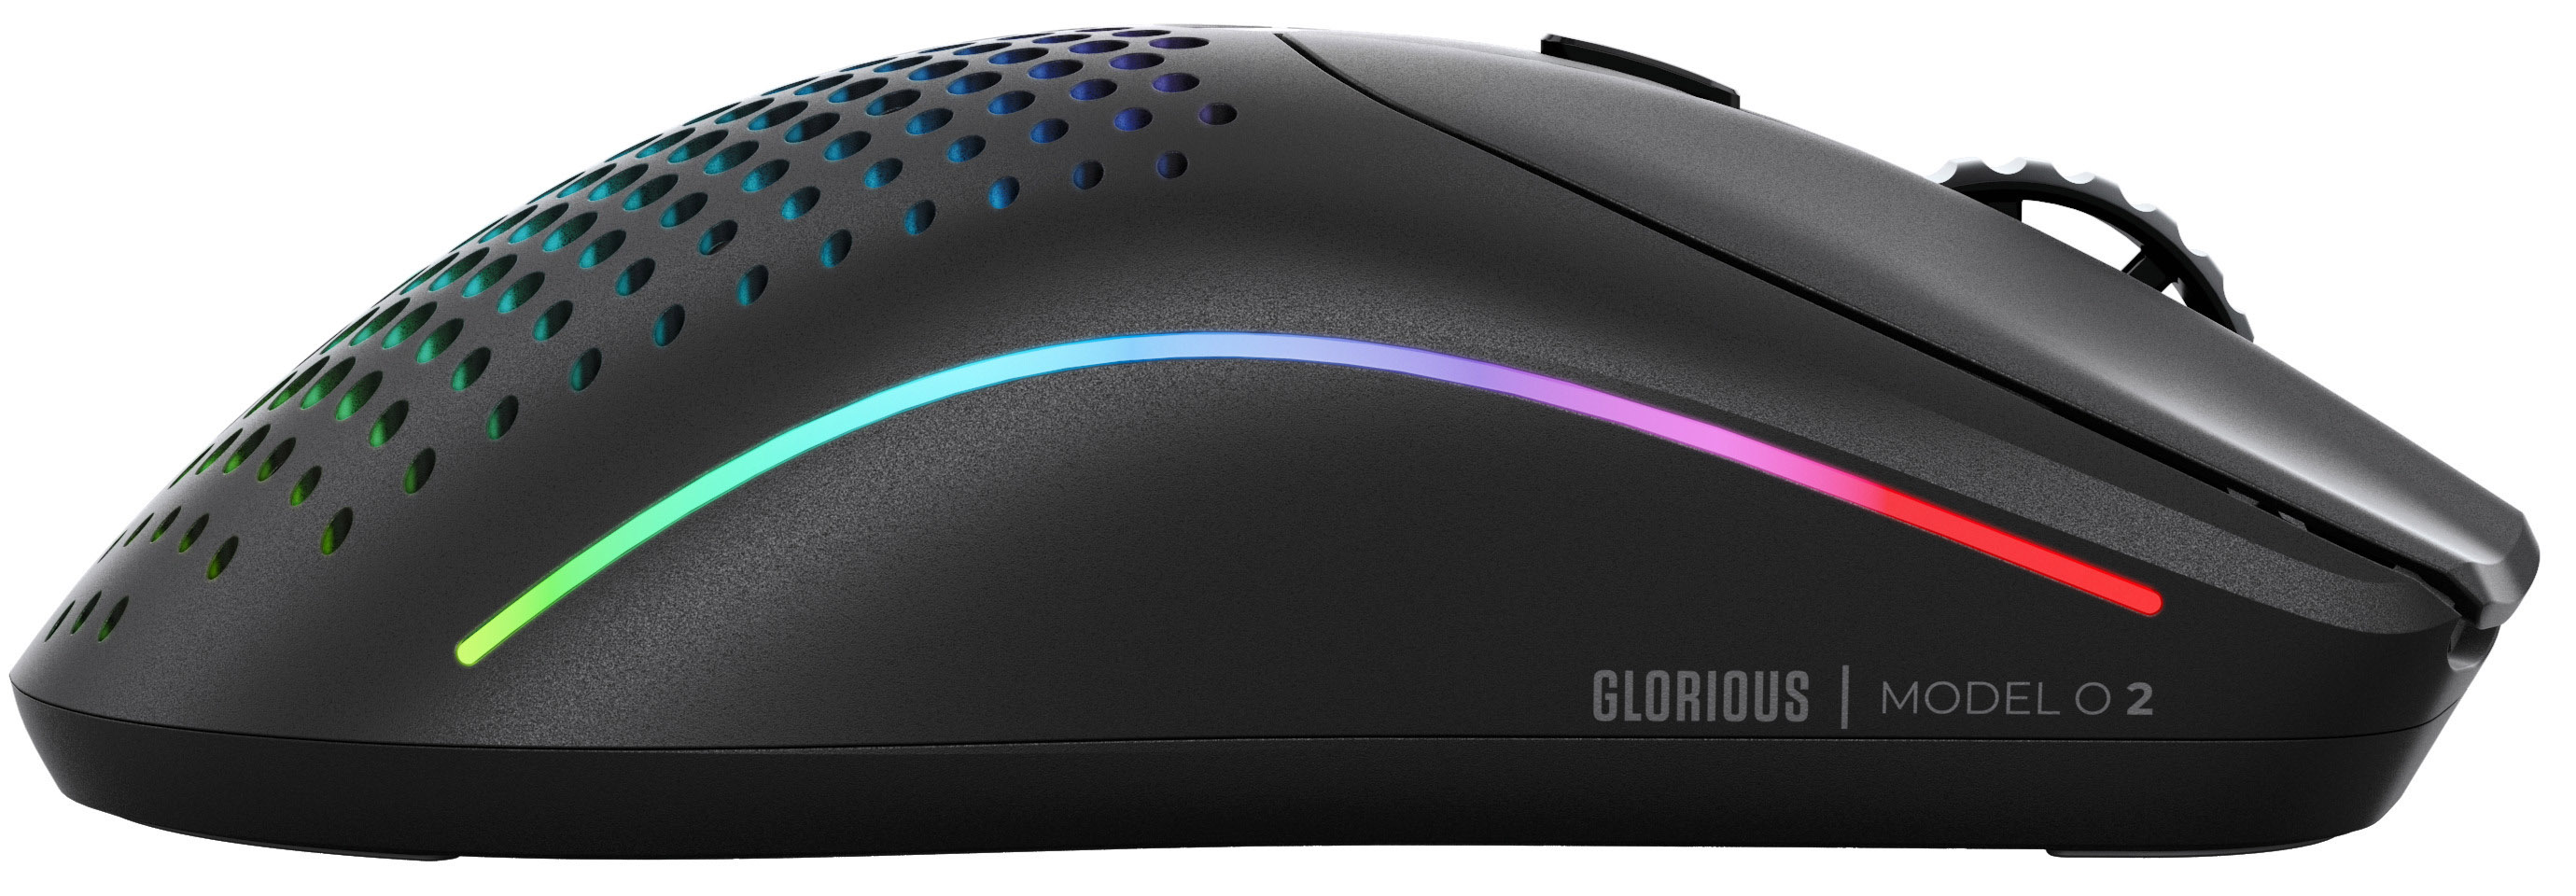 Glorious - Rato Gaming Glorious Model O 2 Wireless Preto